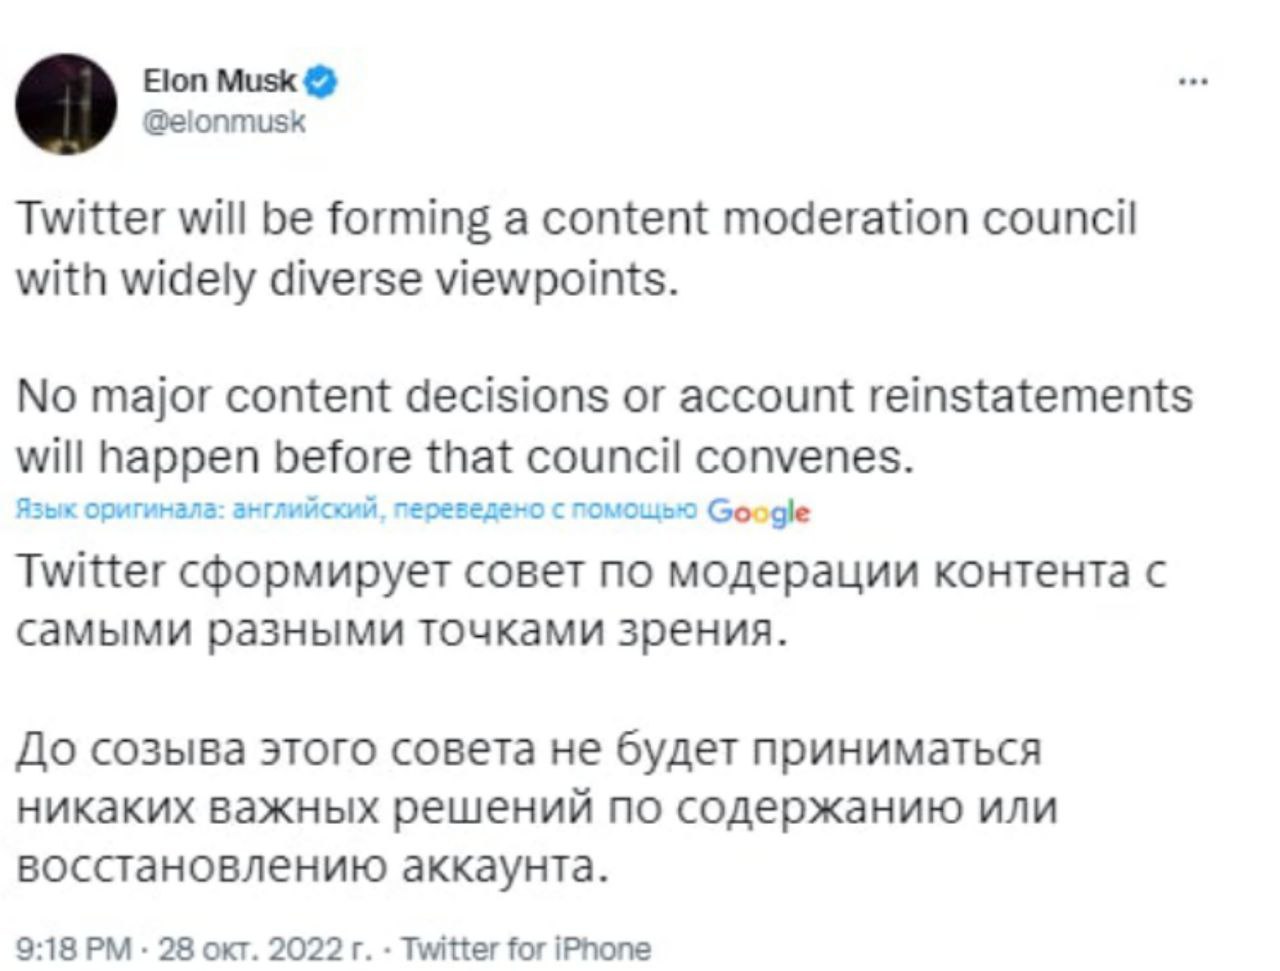 Илон Маск сообщил о том, что Twitter сформирует совет по модерации контента, в котором будут представлены самые разные точки зрения